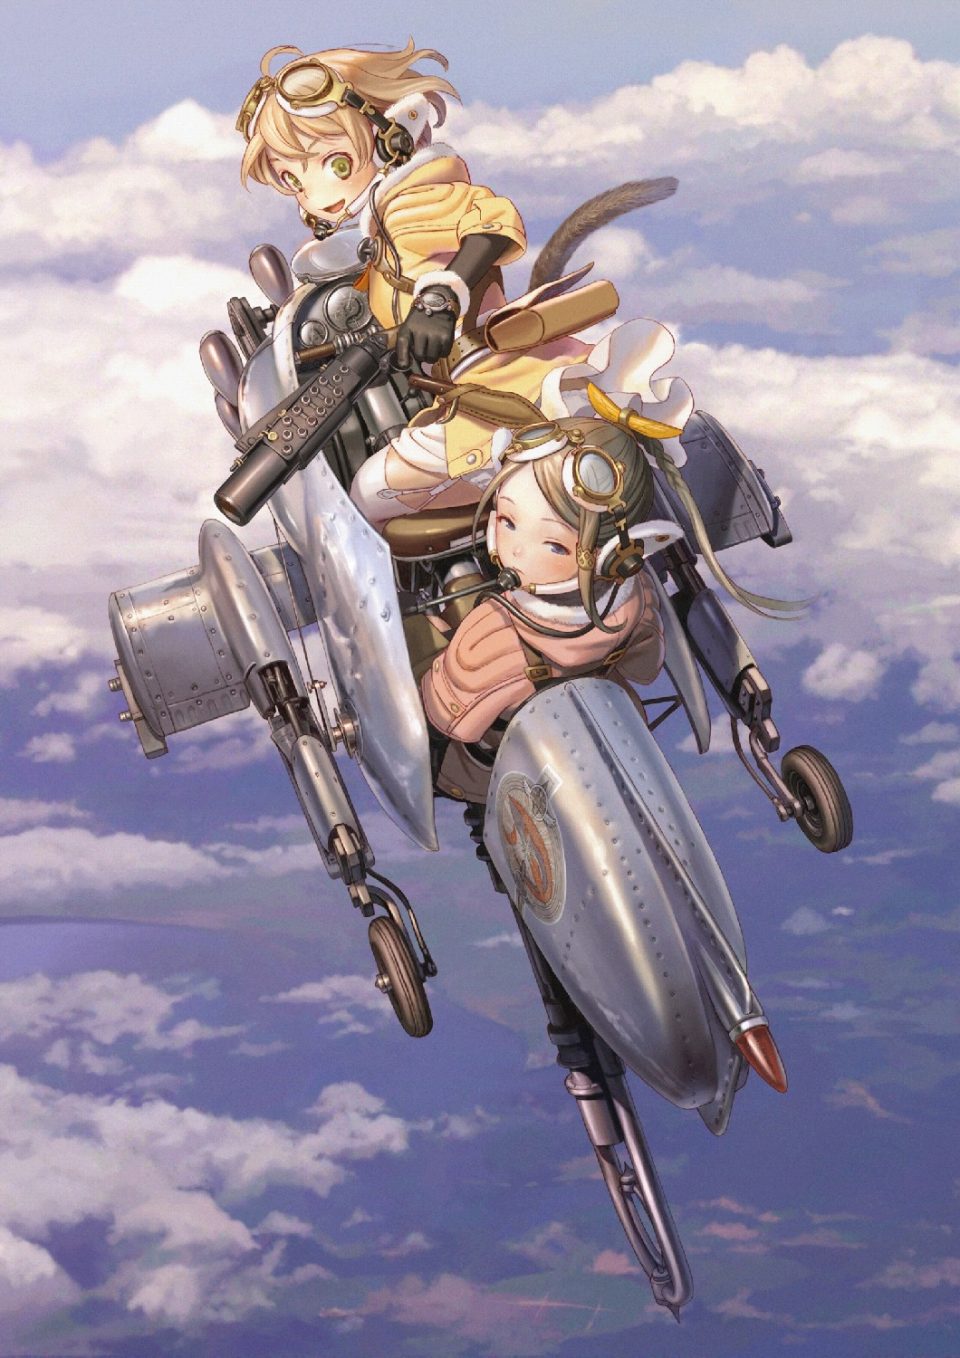 ガンホーとゴンゾ、アニメ「ラストエグザイル‐銀翼のファム‐」を題材としたパソコン・スマートフォン向けブラウザゲームの提供を発表の画像